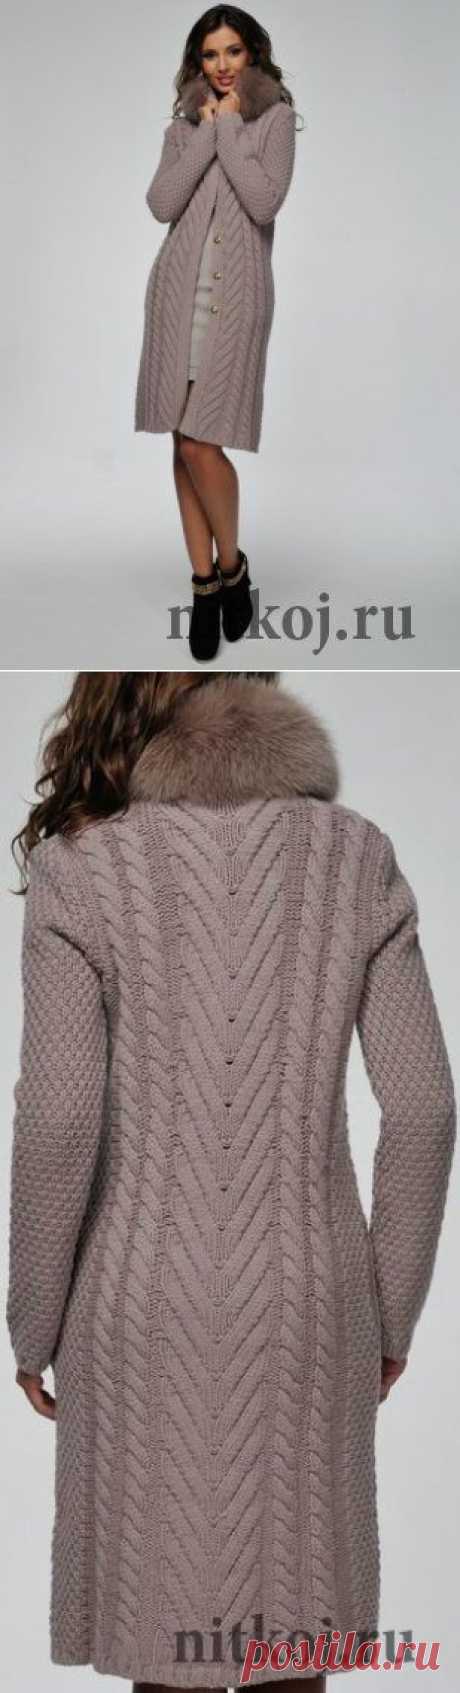 Вязаное пальто с мехом лисы » Ниткой - вязаные вещи для вашего дома, вязание крючком, вязание спицами, схемы вязания